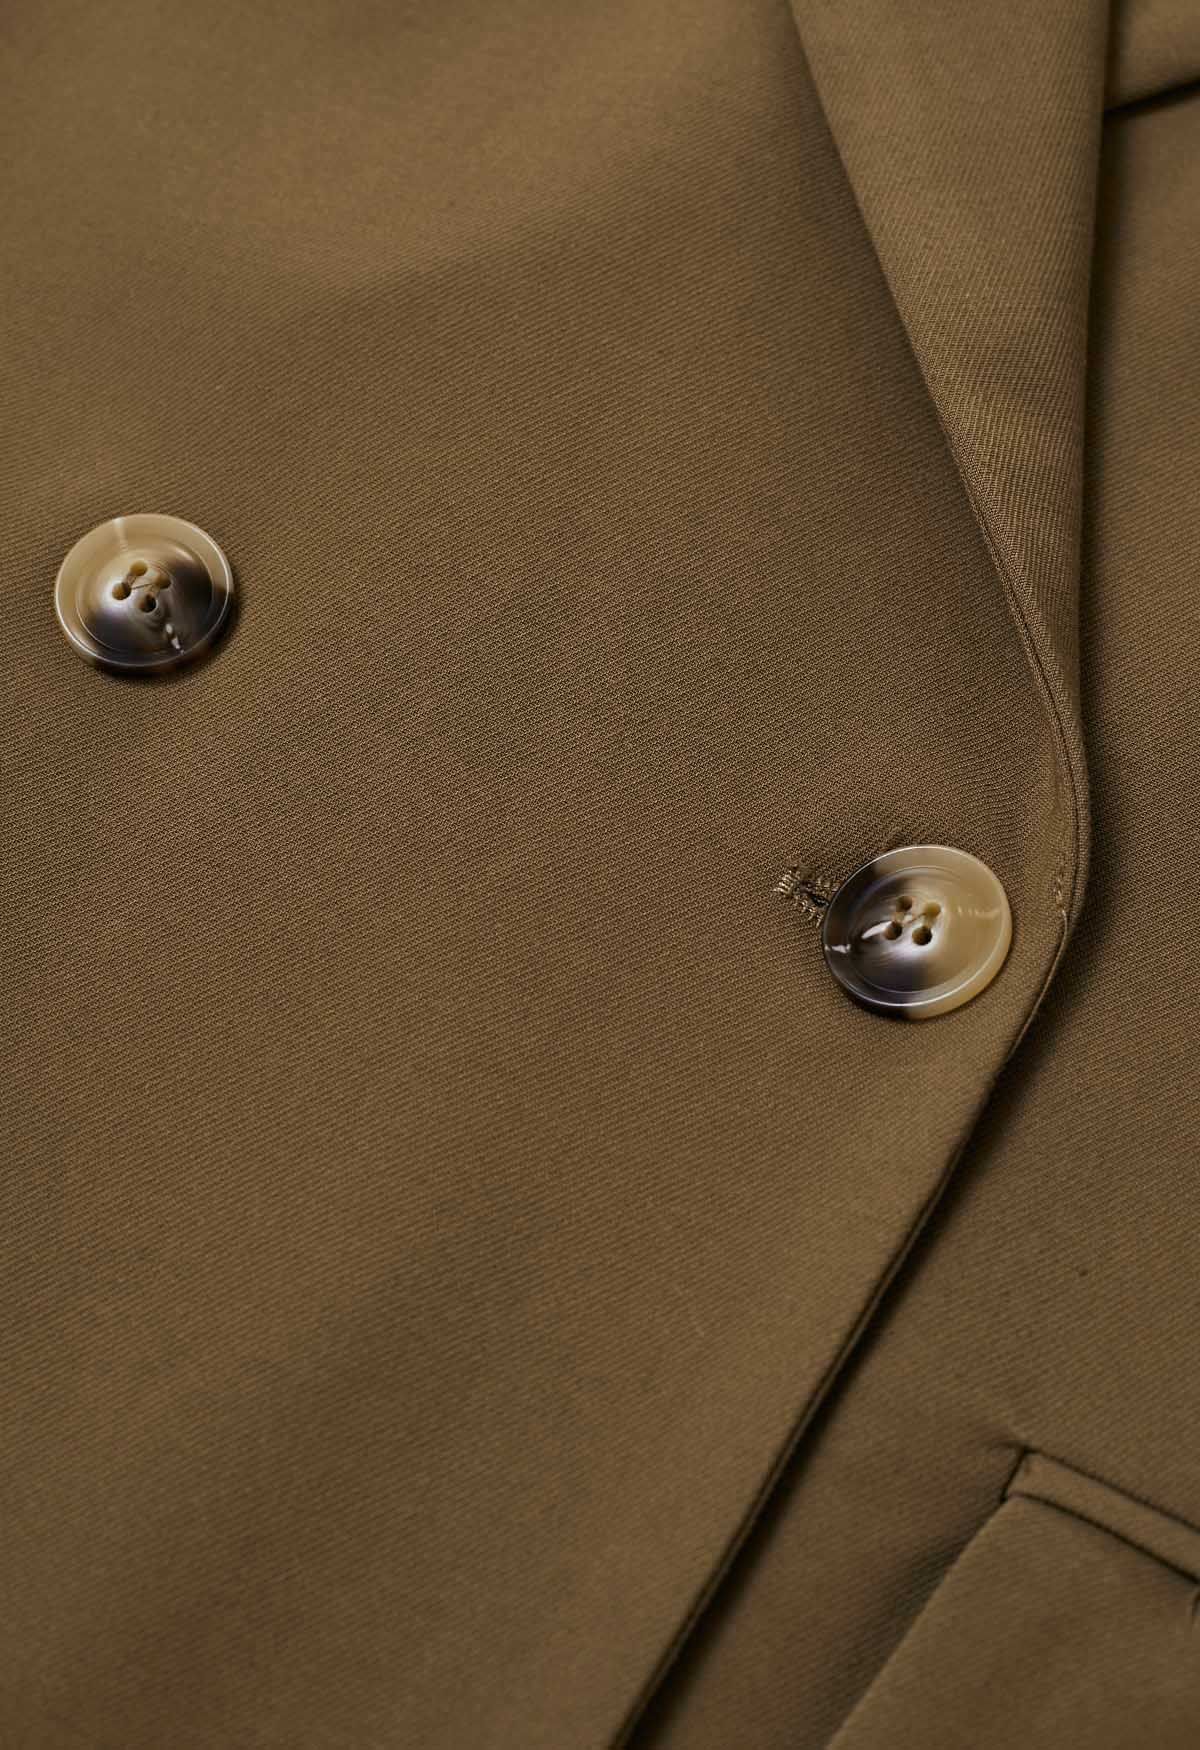 Abrigo largo con cinturón y doble botonadura de moda en marrón